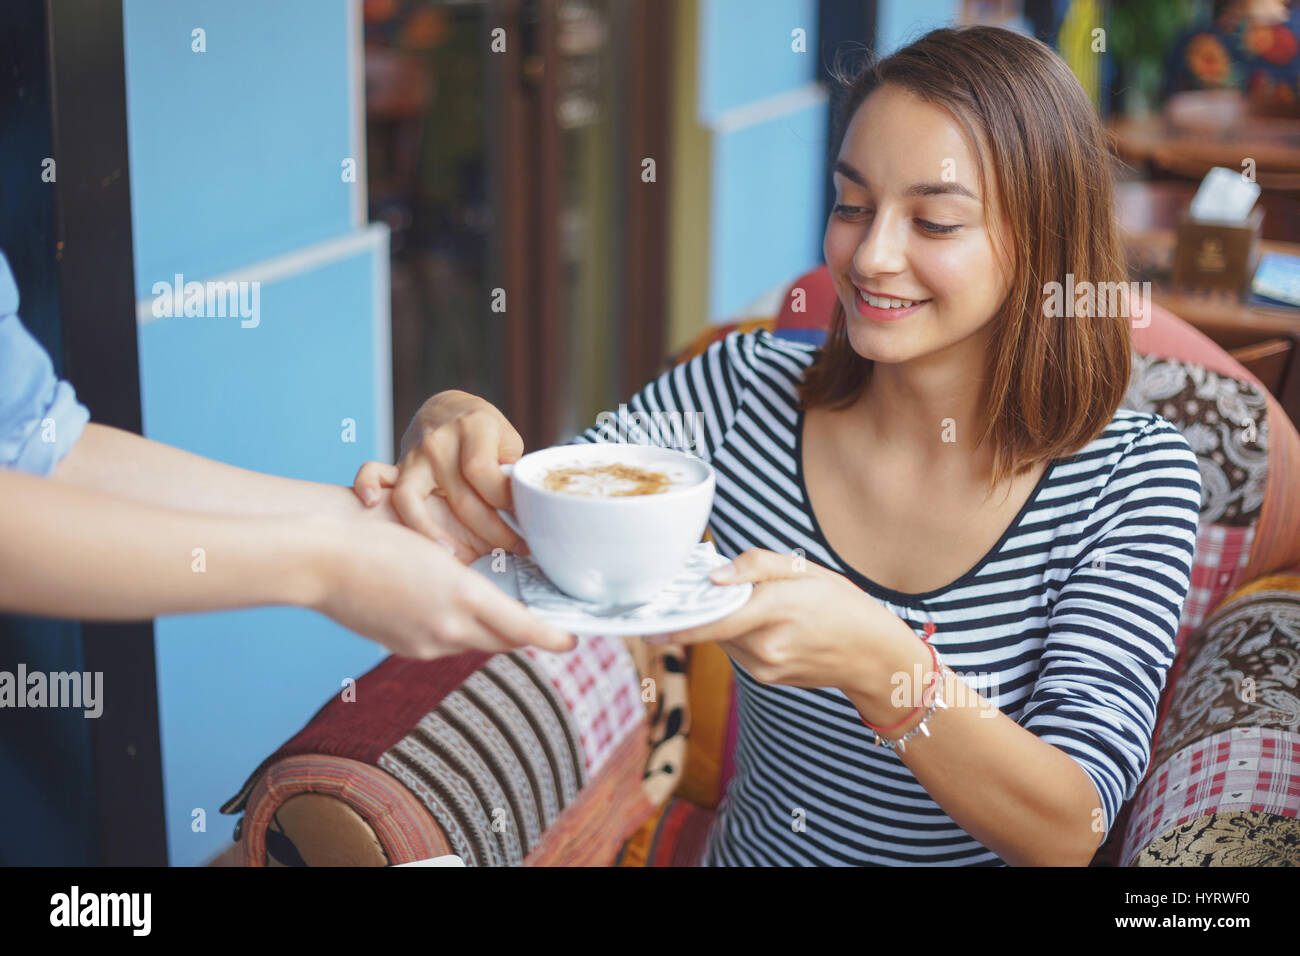 Mujer joven sentada en las zonas urbanas interiores cafe. Cafe de la vida de ciudad. Retrato de casual joven Foto de stock